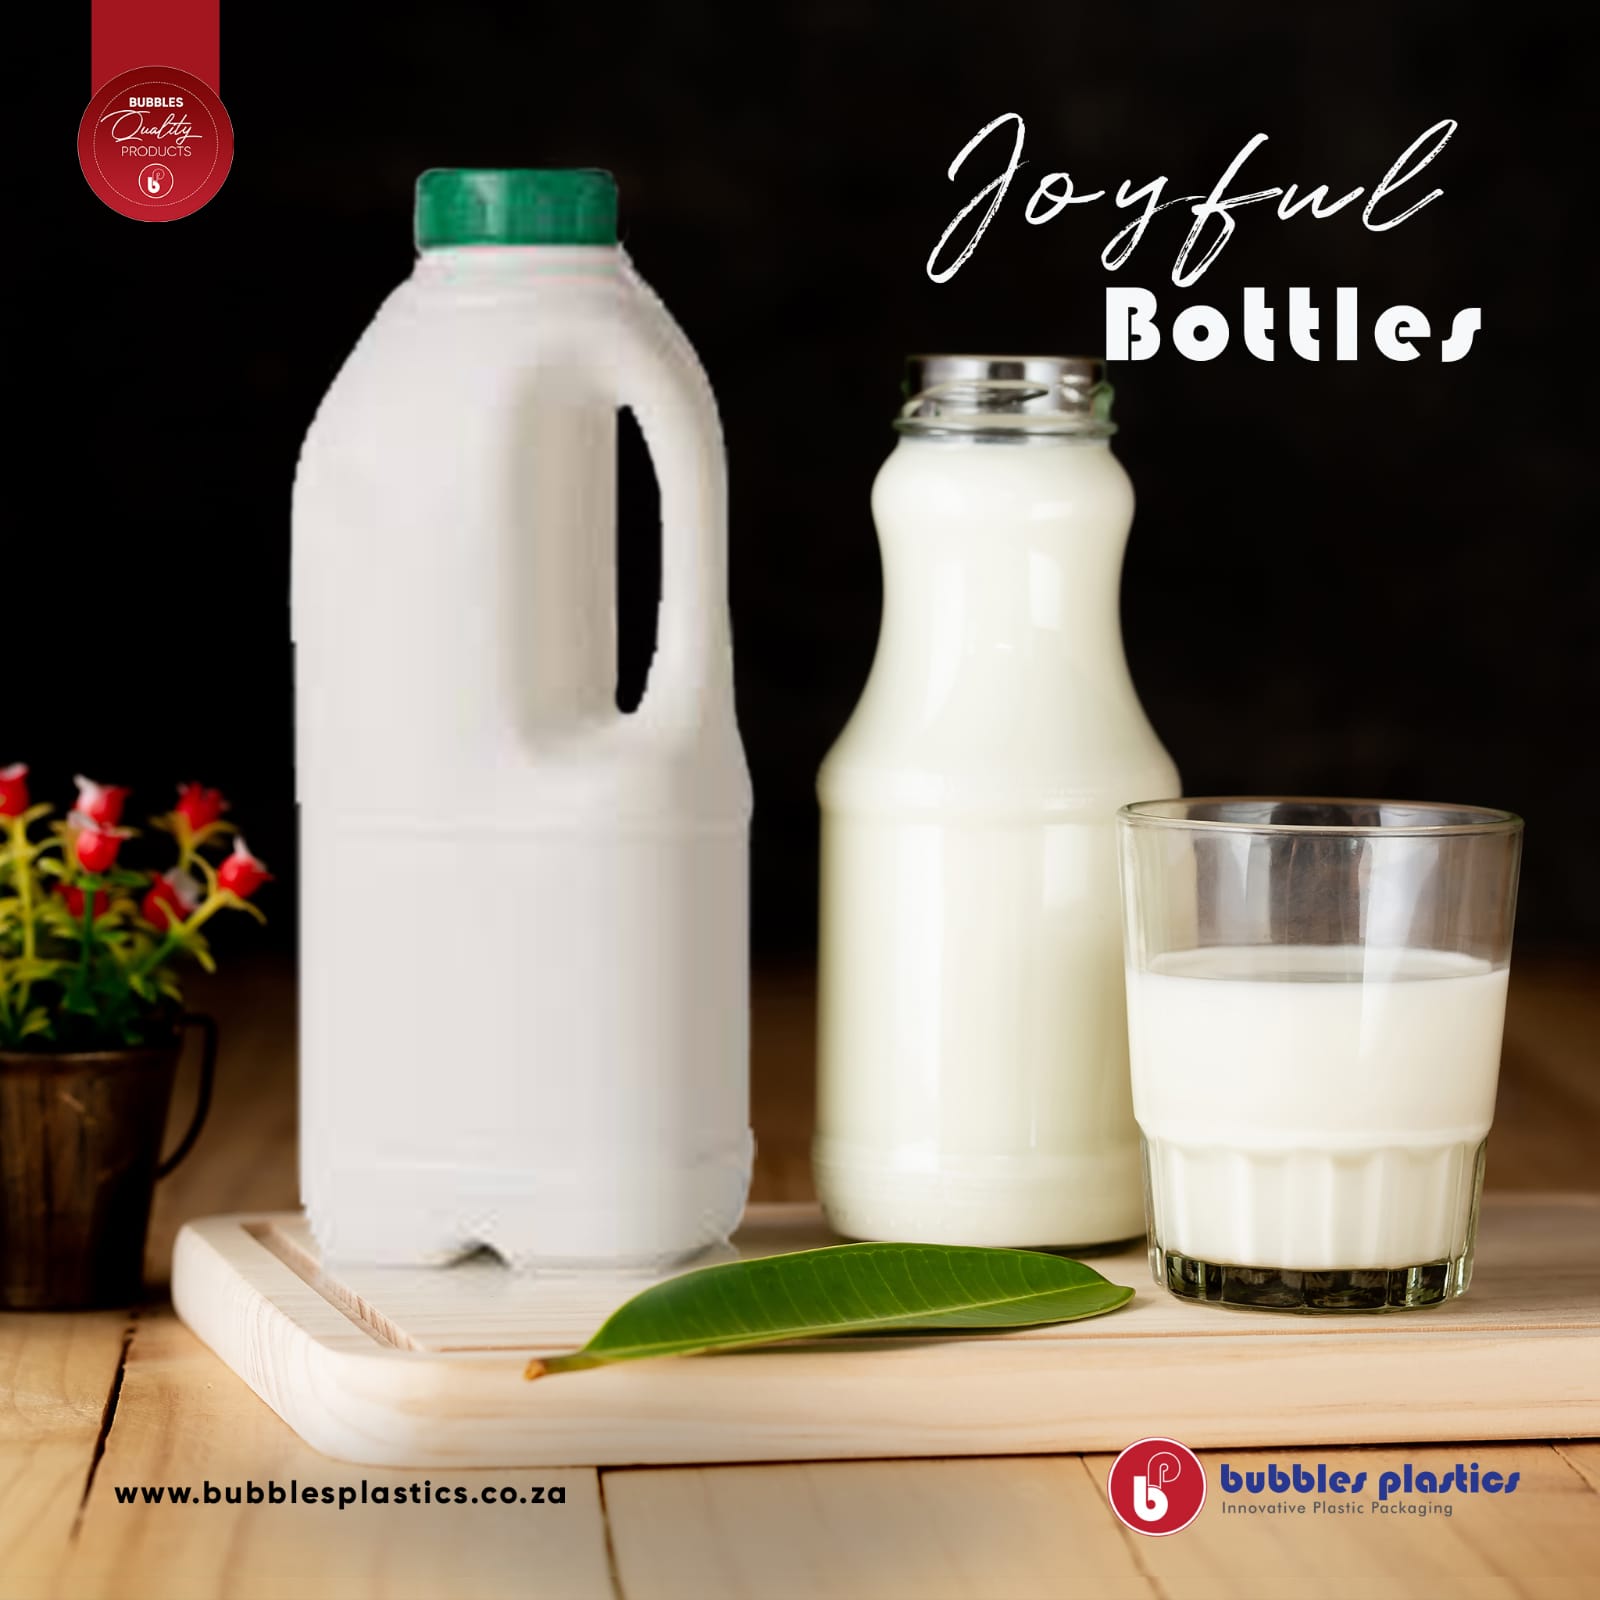 1L Plastic Milk Bottle with Lids Natural Jugpack 104pcs